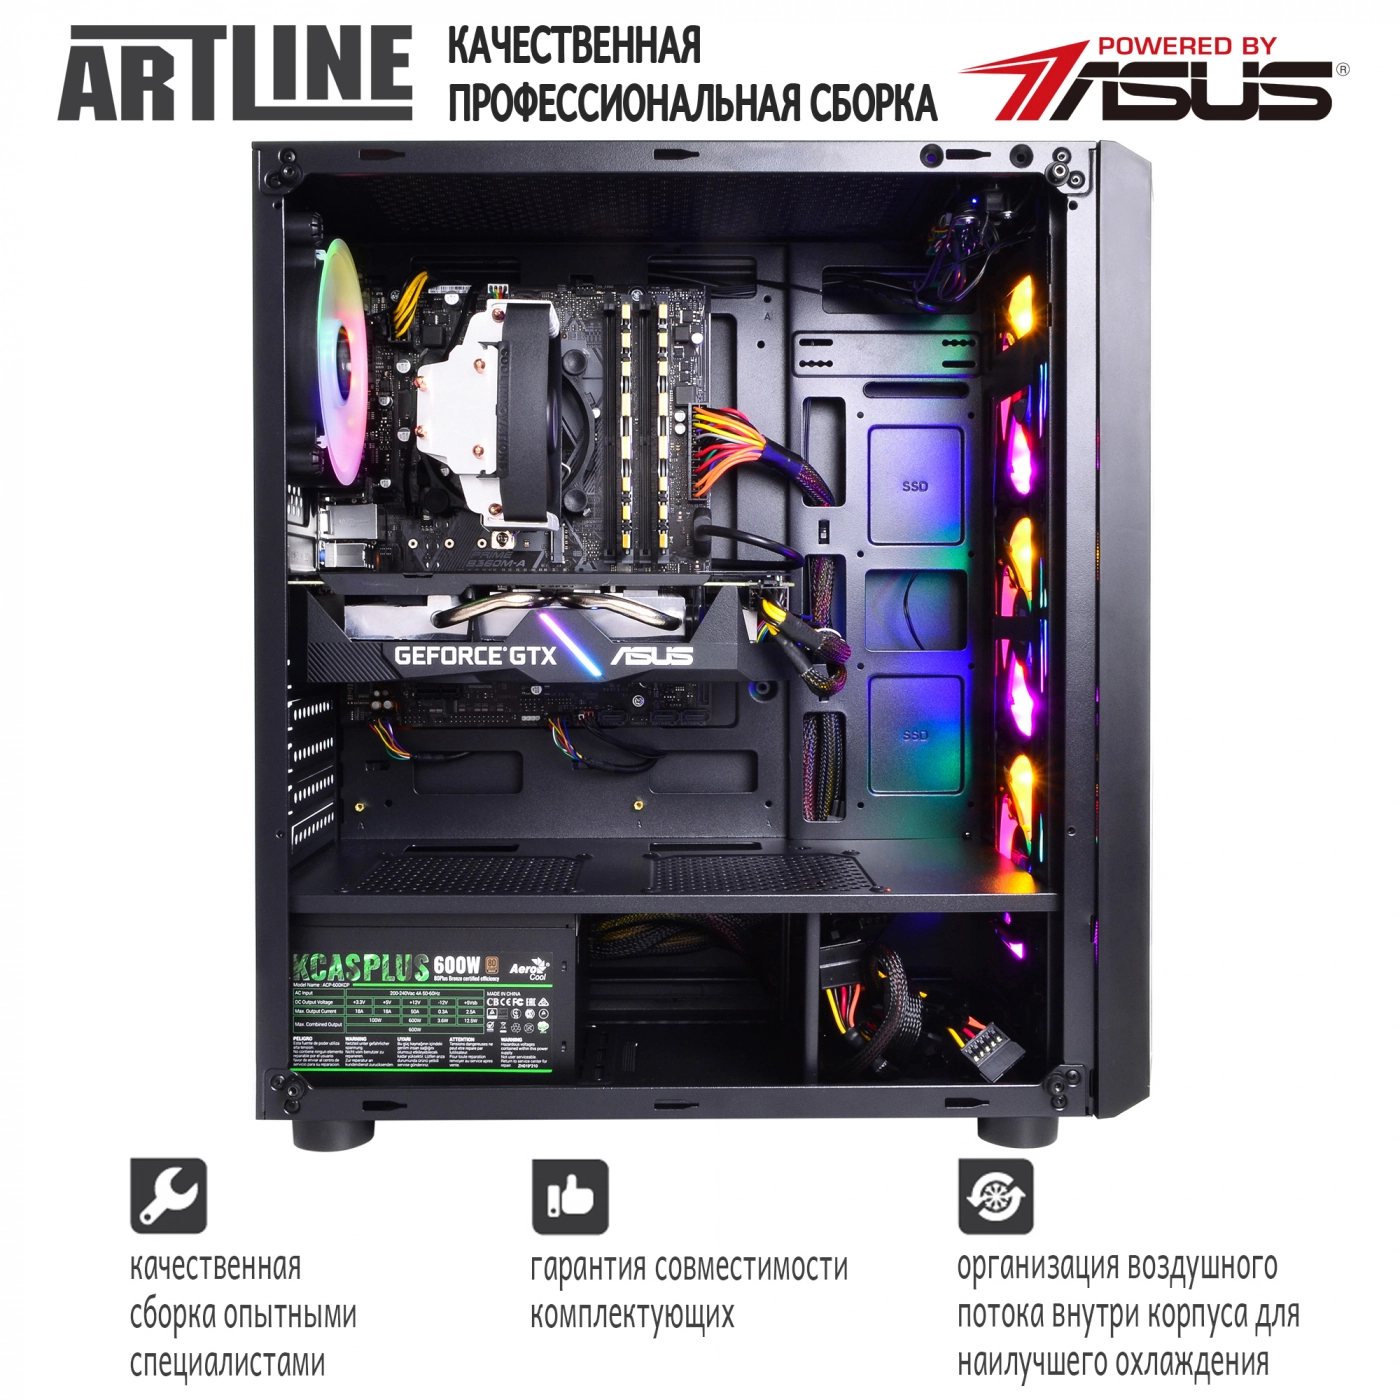 Купить Компьютер ARTLINE Gaming X35v34 - фото 8